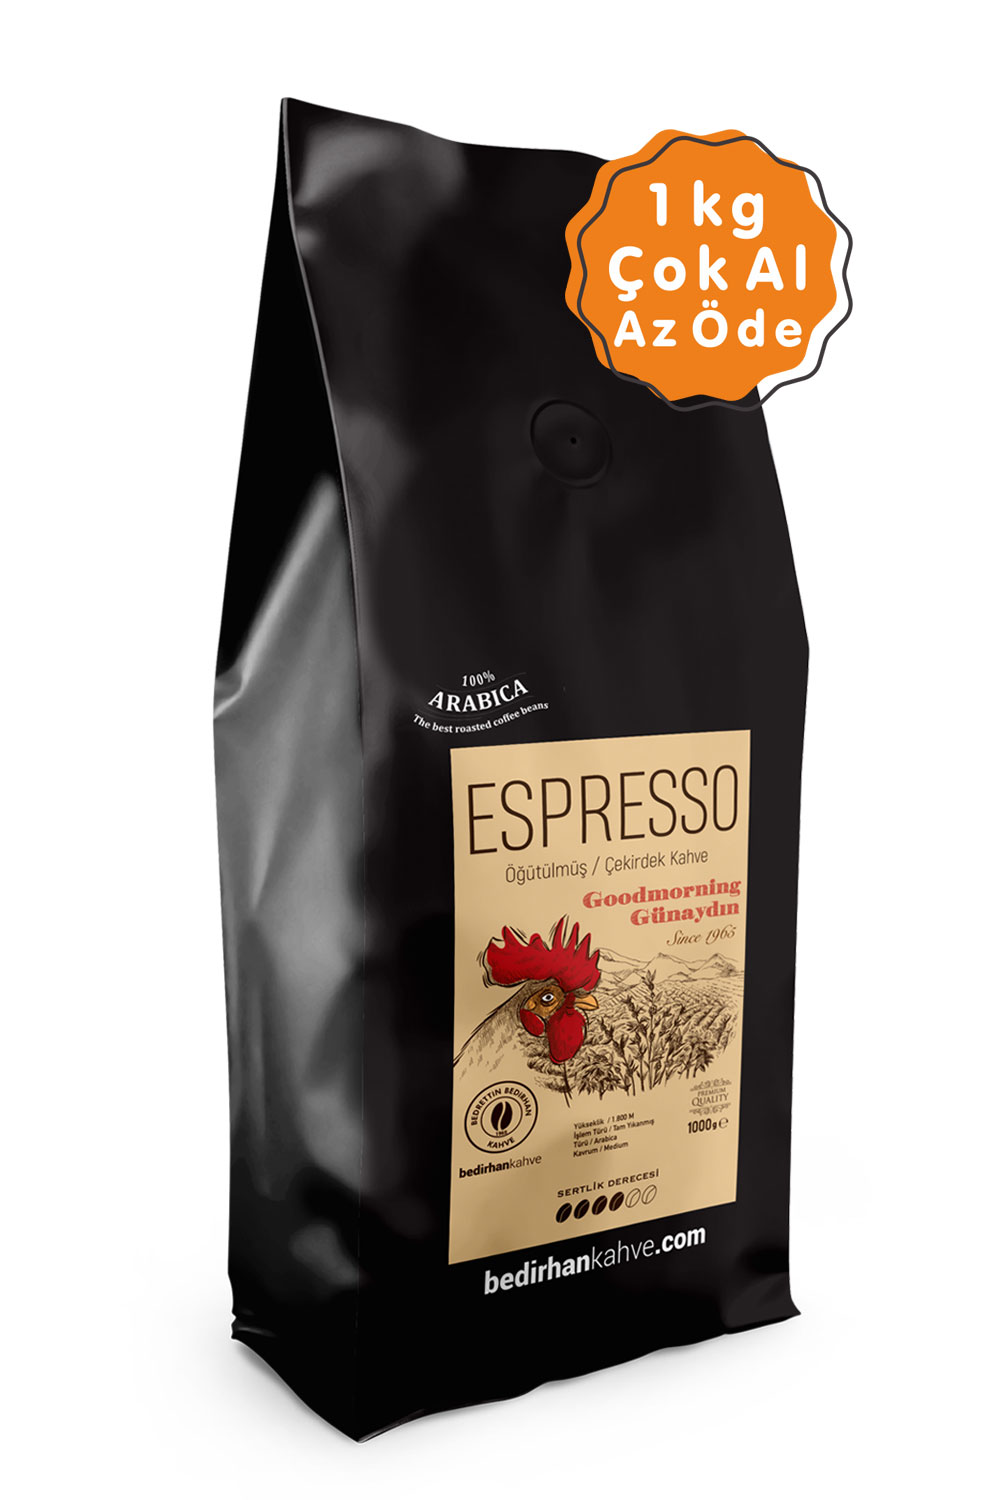 Bedirhan Kahve Espresso Öğütülmüş Kahve 1 KG